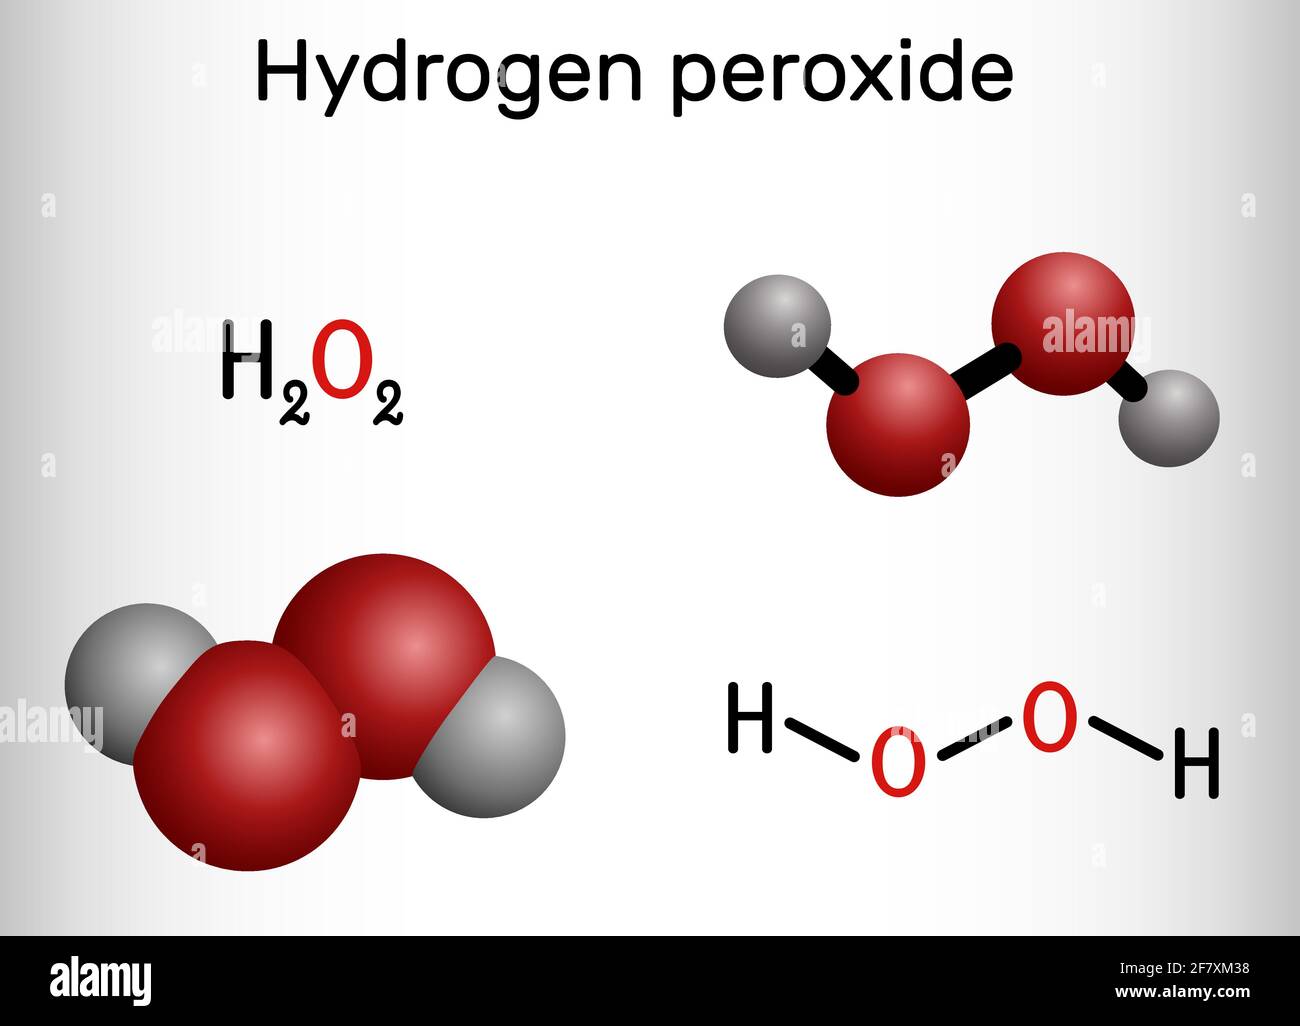 Peroxyde d'hydrogène, perhydrol, molécule H2O2. Il s'agit de peroxyde,  agent oxydant avec désinfectant, antiviral, activités antibactériennes.  Chimie structurelle Image Vectorielle Stock - Alamy